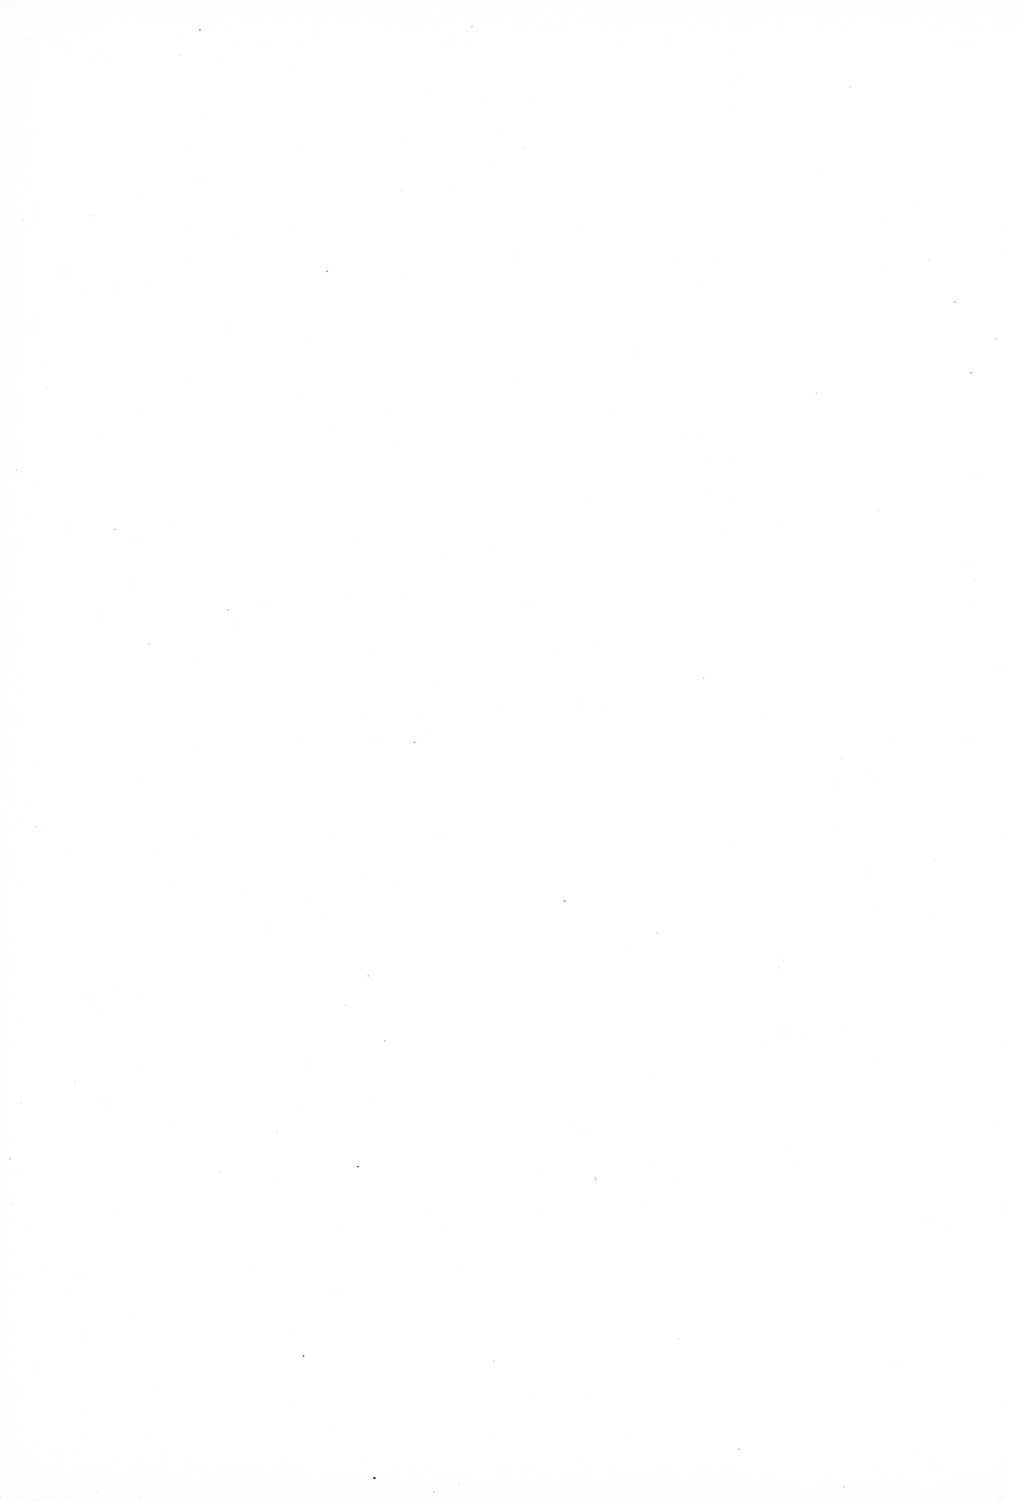 Unrecht als System, Dokumente über planmäßige Rechtsverletzungen in der Sowjetzone Deutschlands, zusammengestellt vom Untersuchungsausschuß Freiheitlicher Juristen (UFJ), Teil Ⅳ 1958-1961, herausgegeben vom Bundesministerium für gesamtdeutsche Fragen, Bonn und Berlin 1962, Seite 96 (Unr. Syst. 1958-1961, S. 96)